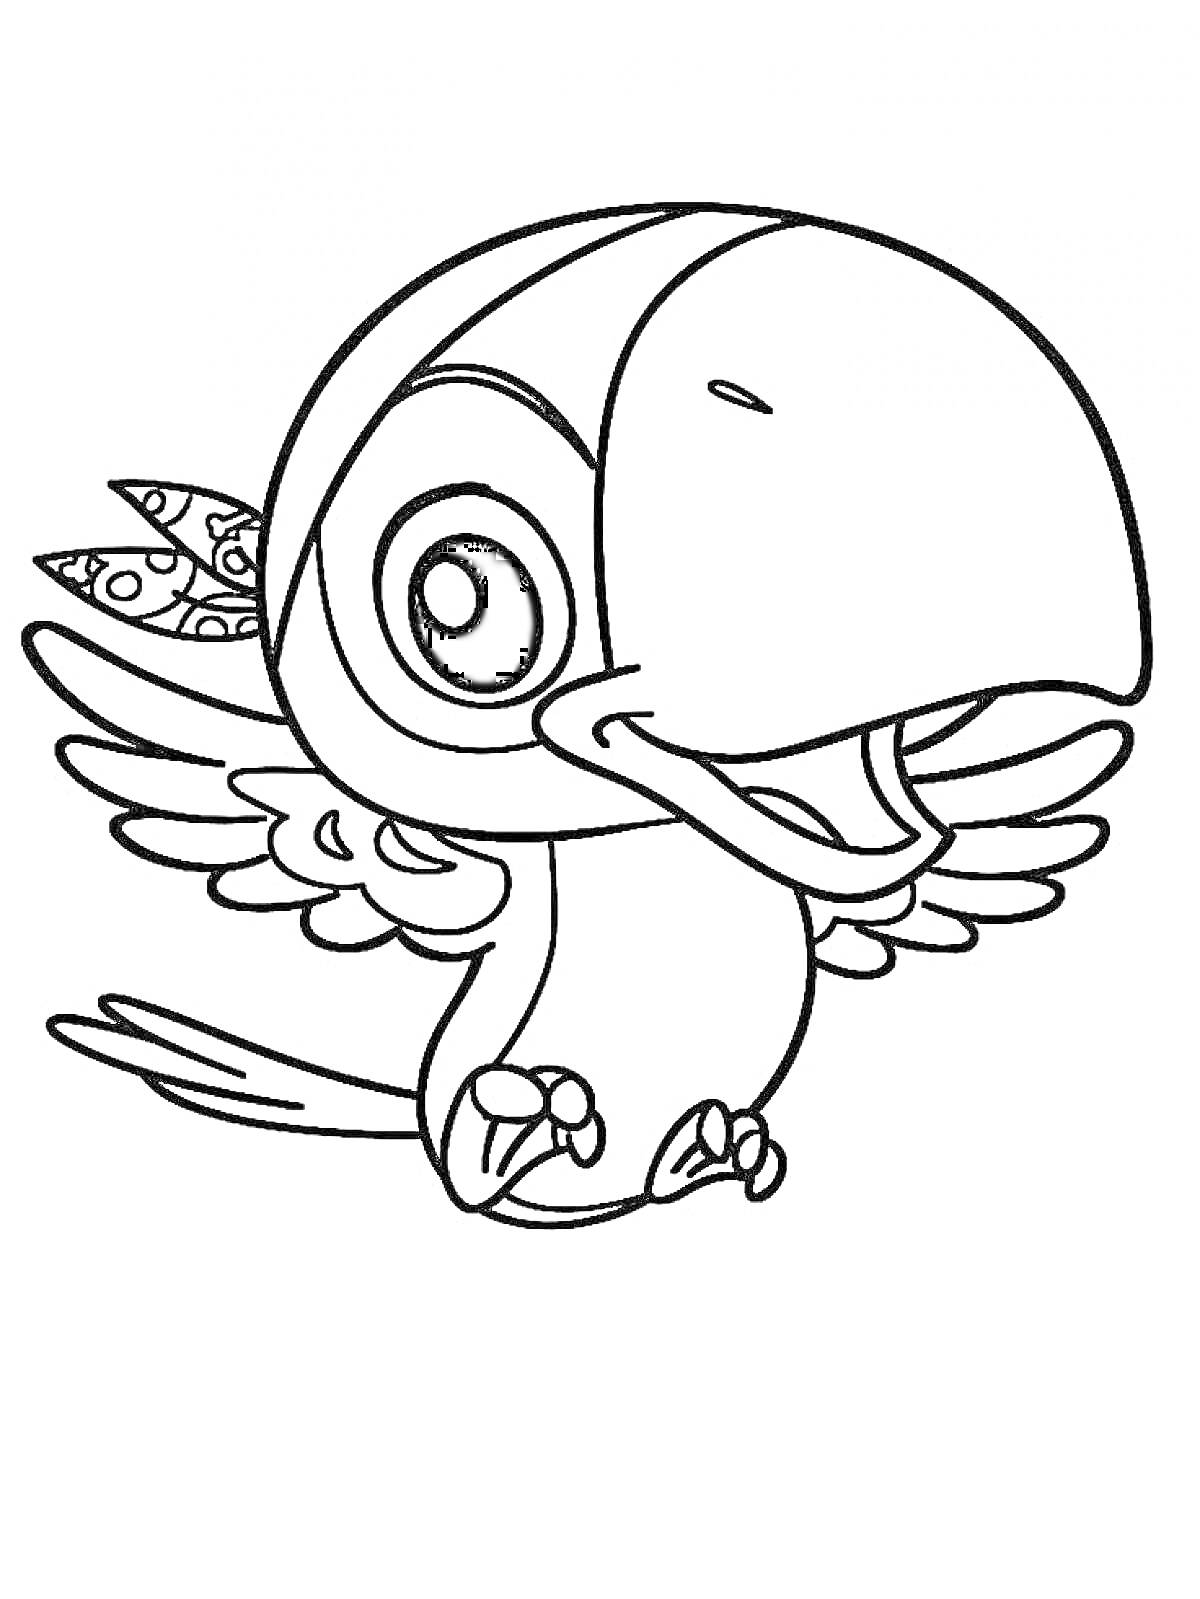 Раскраска Птенец с большим клювом, маленькими крыльями, и двумя перьями на голове